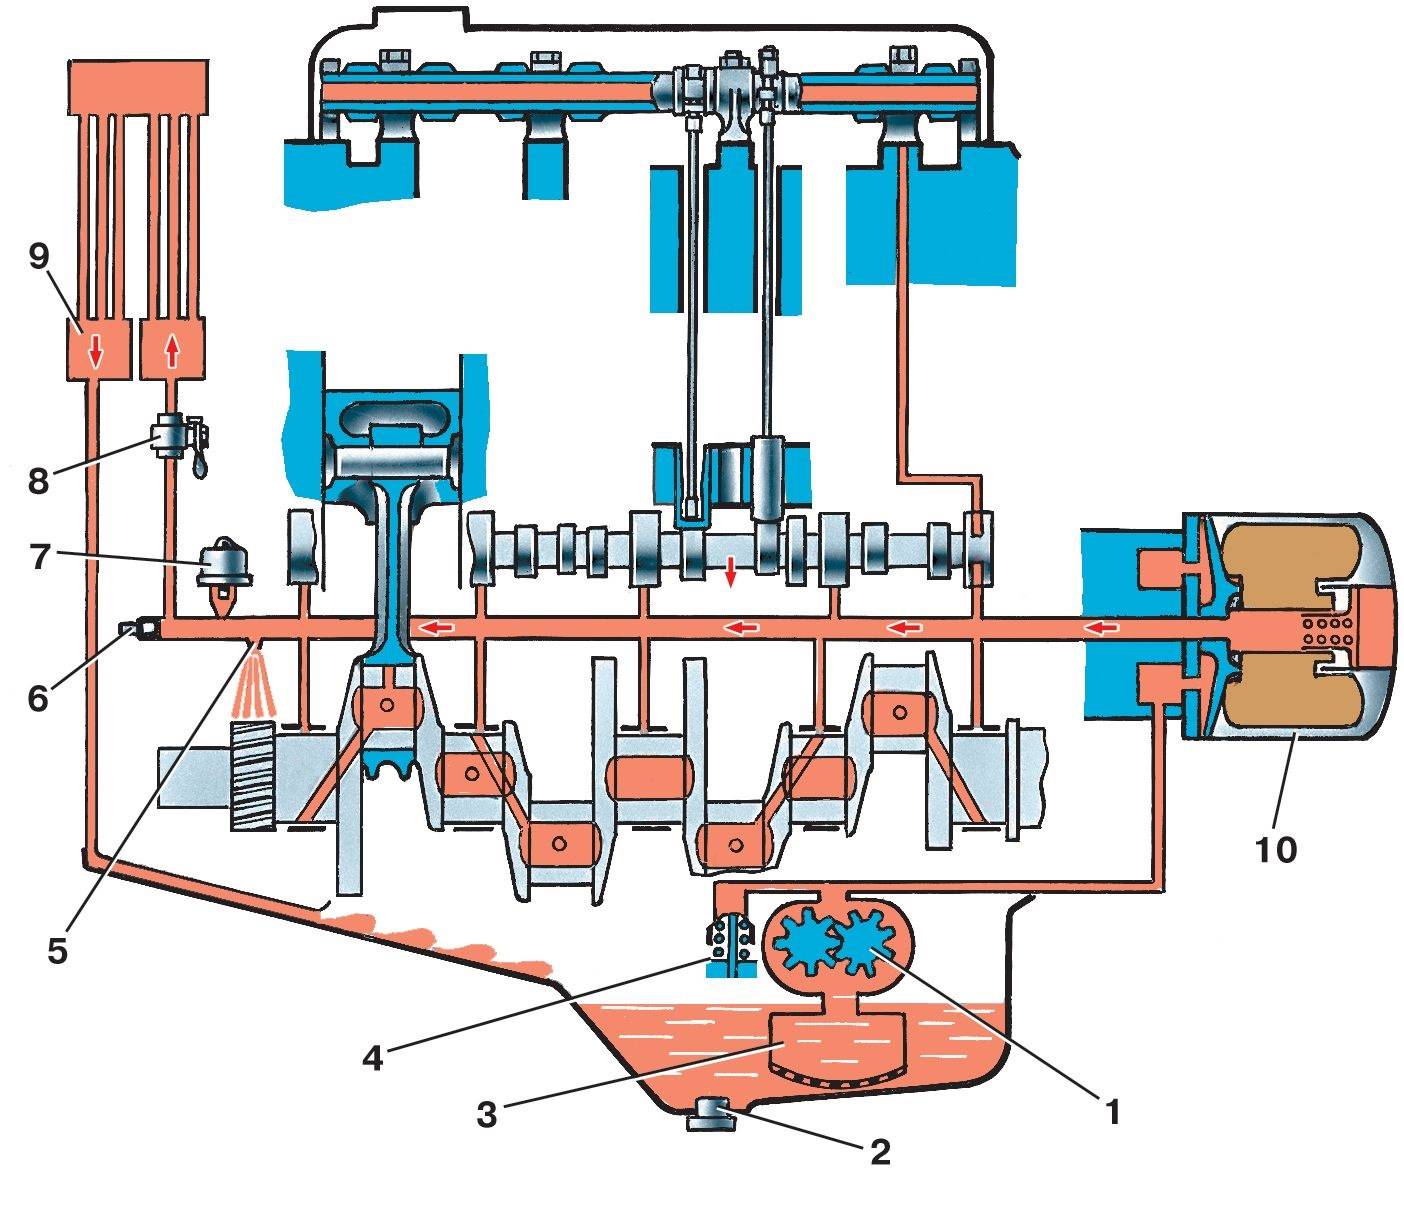 Смазочная система дизельного мотора